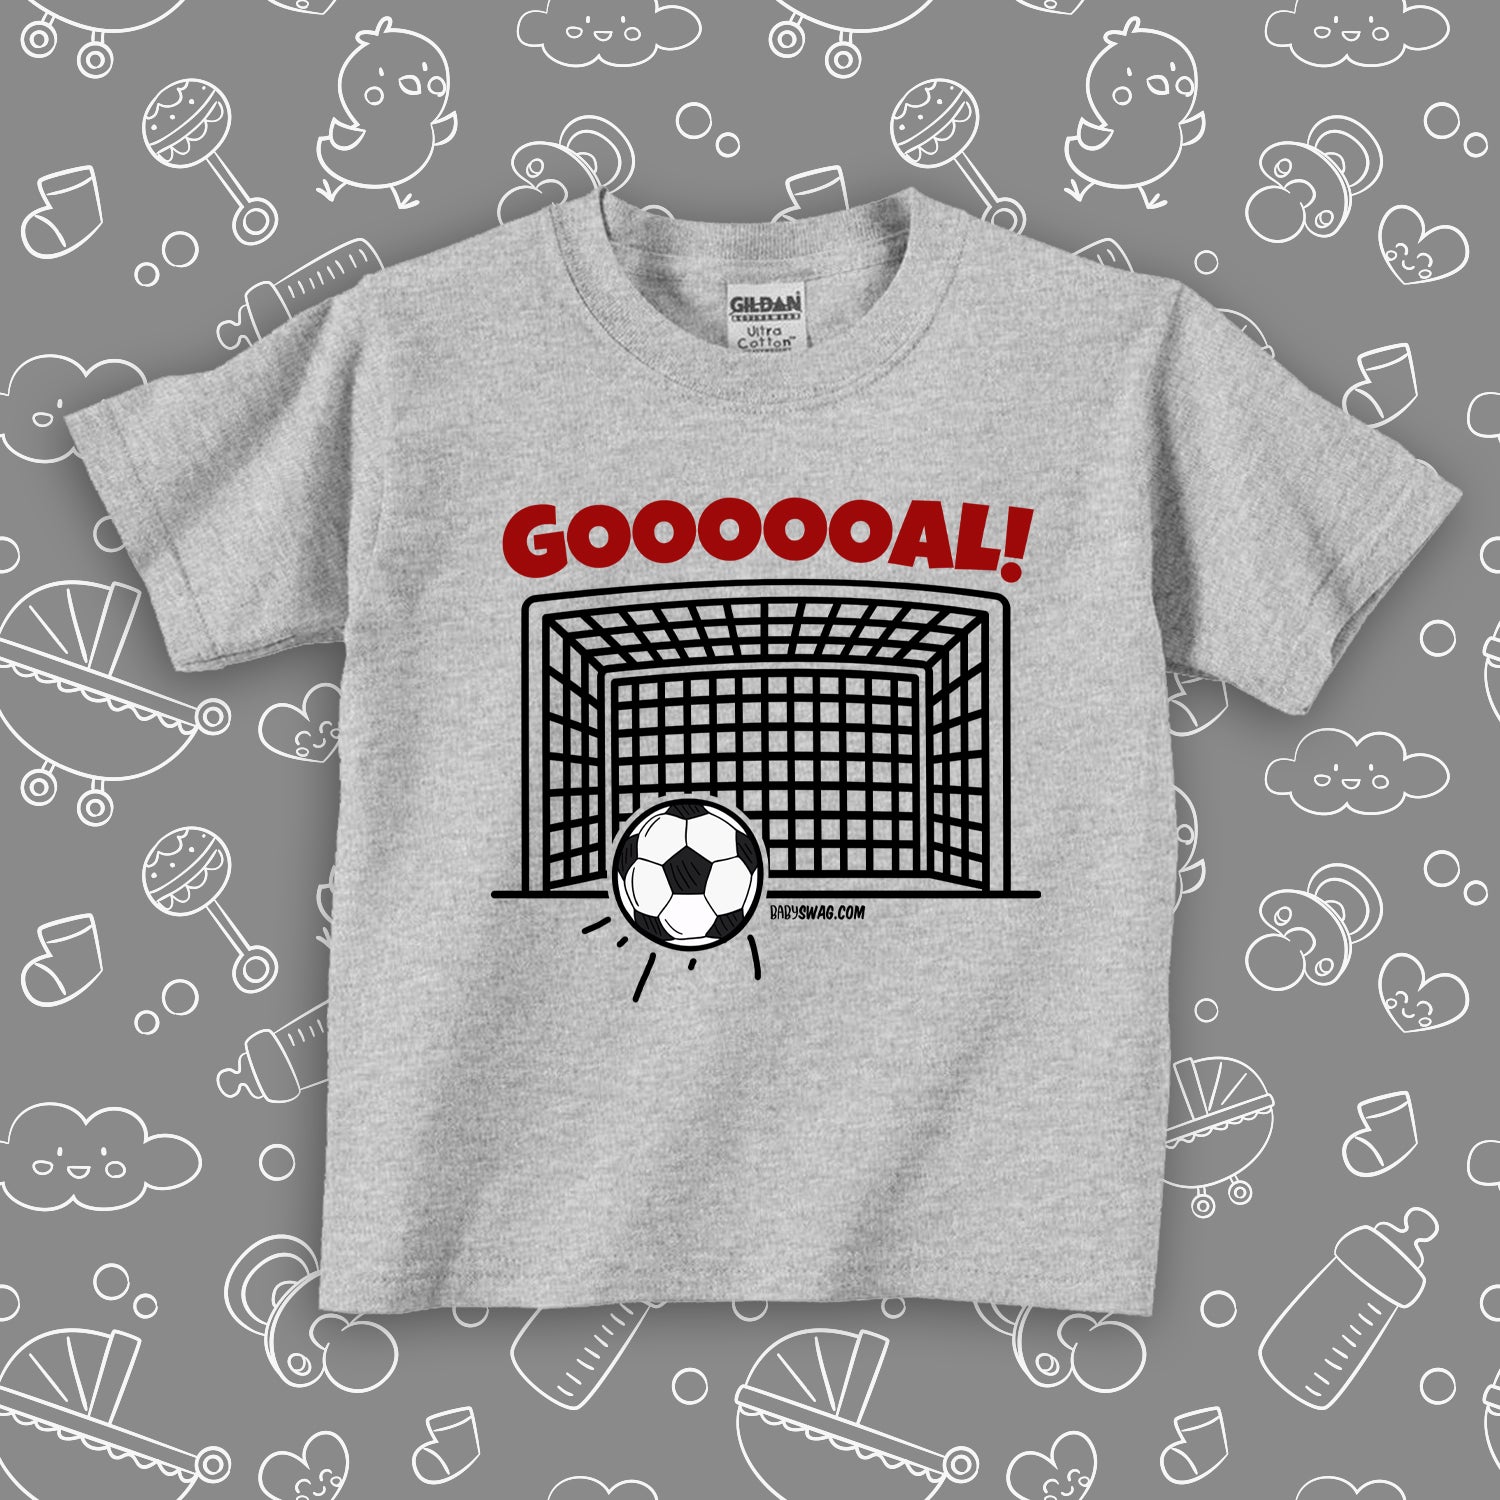 The "Goooooal!" toddler boy graphic tees in grey. 